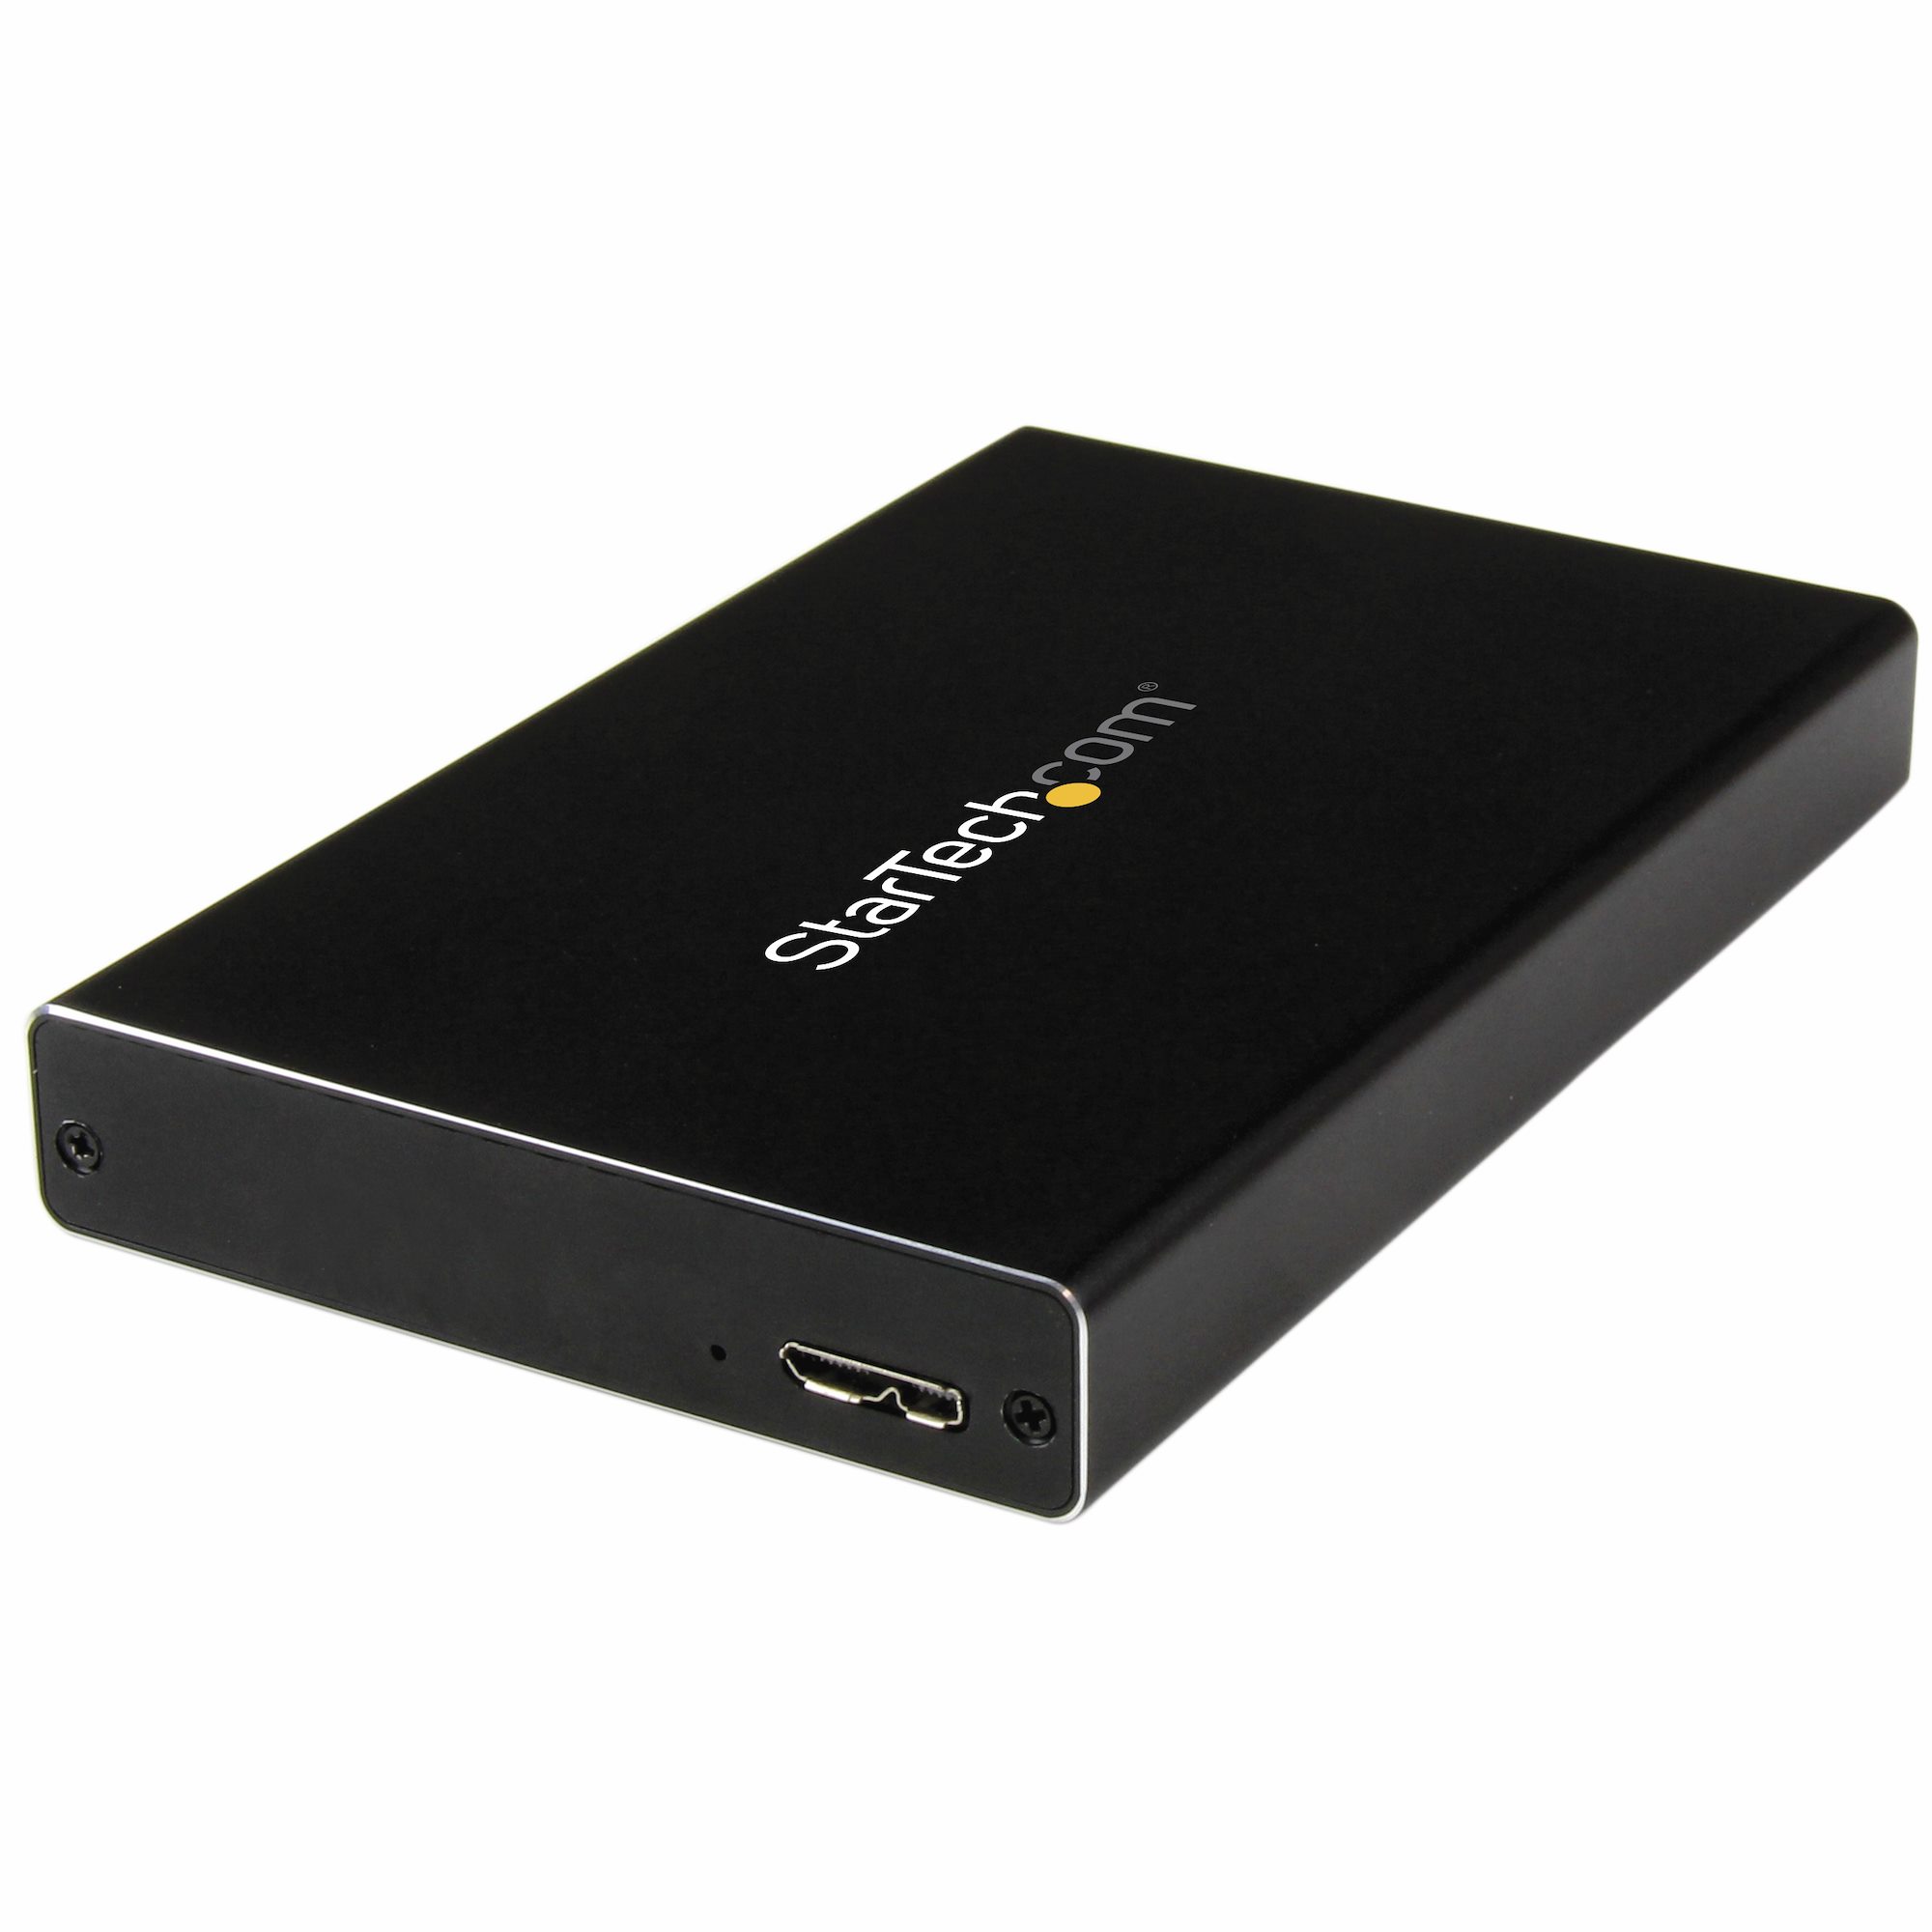 Caja USB 3.0 UASP de Disco IDE 2,5 - Cajas para unidades externas | StarTech.com España